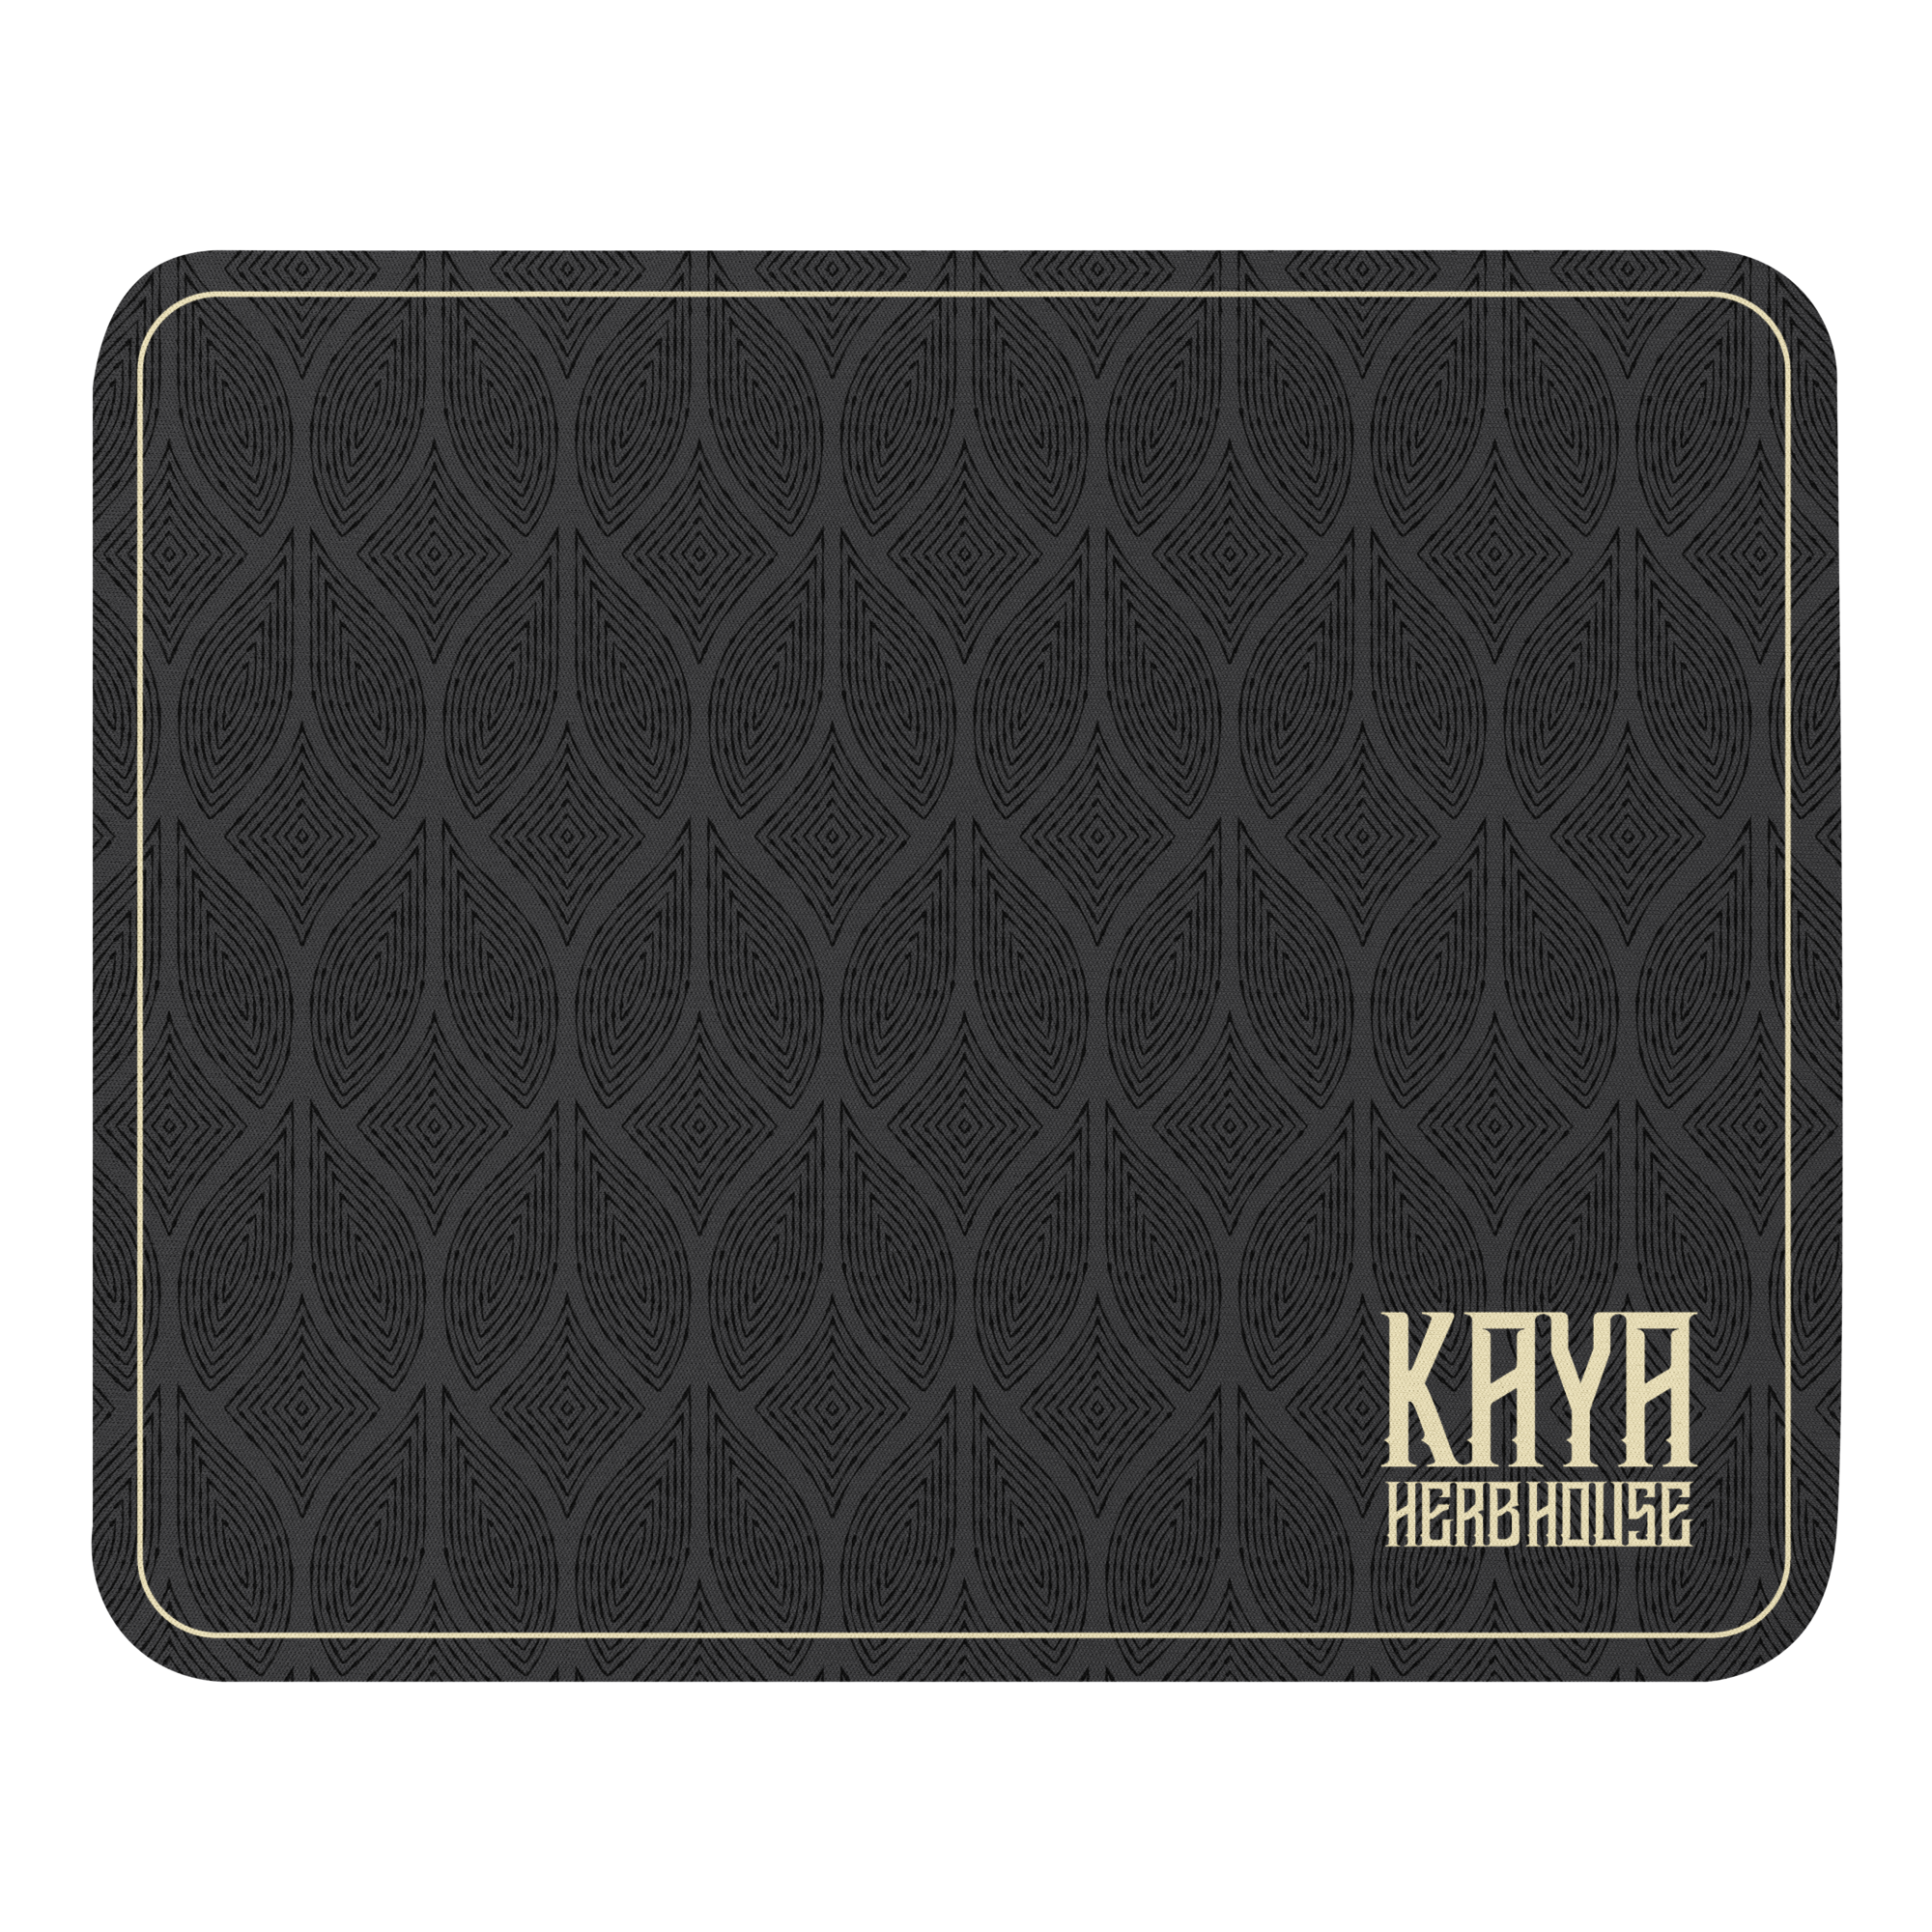 Kaya Seed Mouse pad